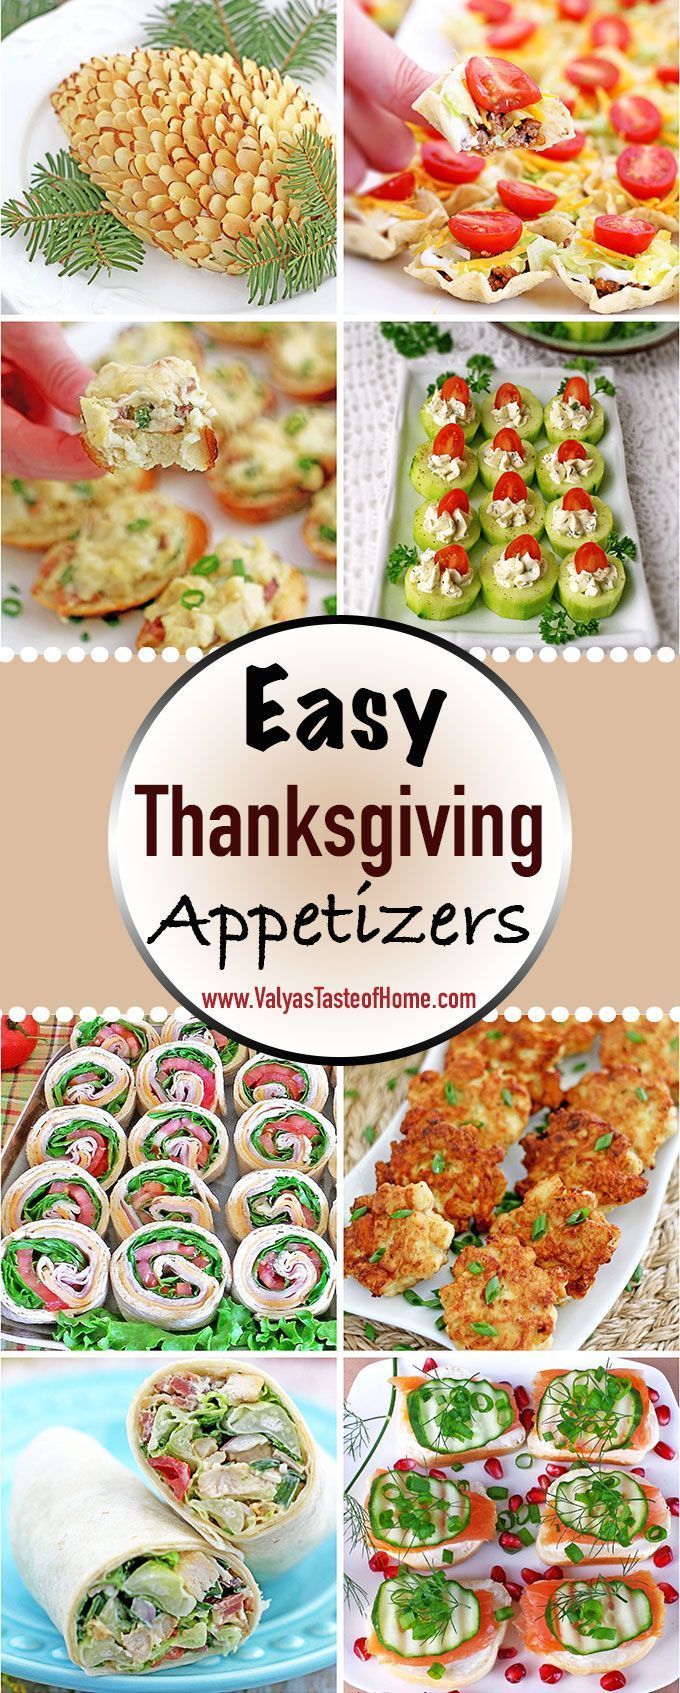 Easy Thanksgiving Appetizers « Valya's Taste of Home - Easy Thanksgiving Appetizers « Valya's Taste of Home -   18 thanksgiving appetizers easy ideas